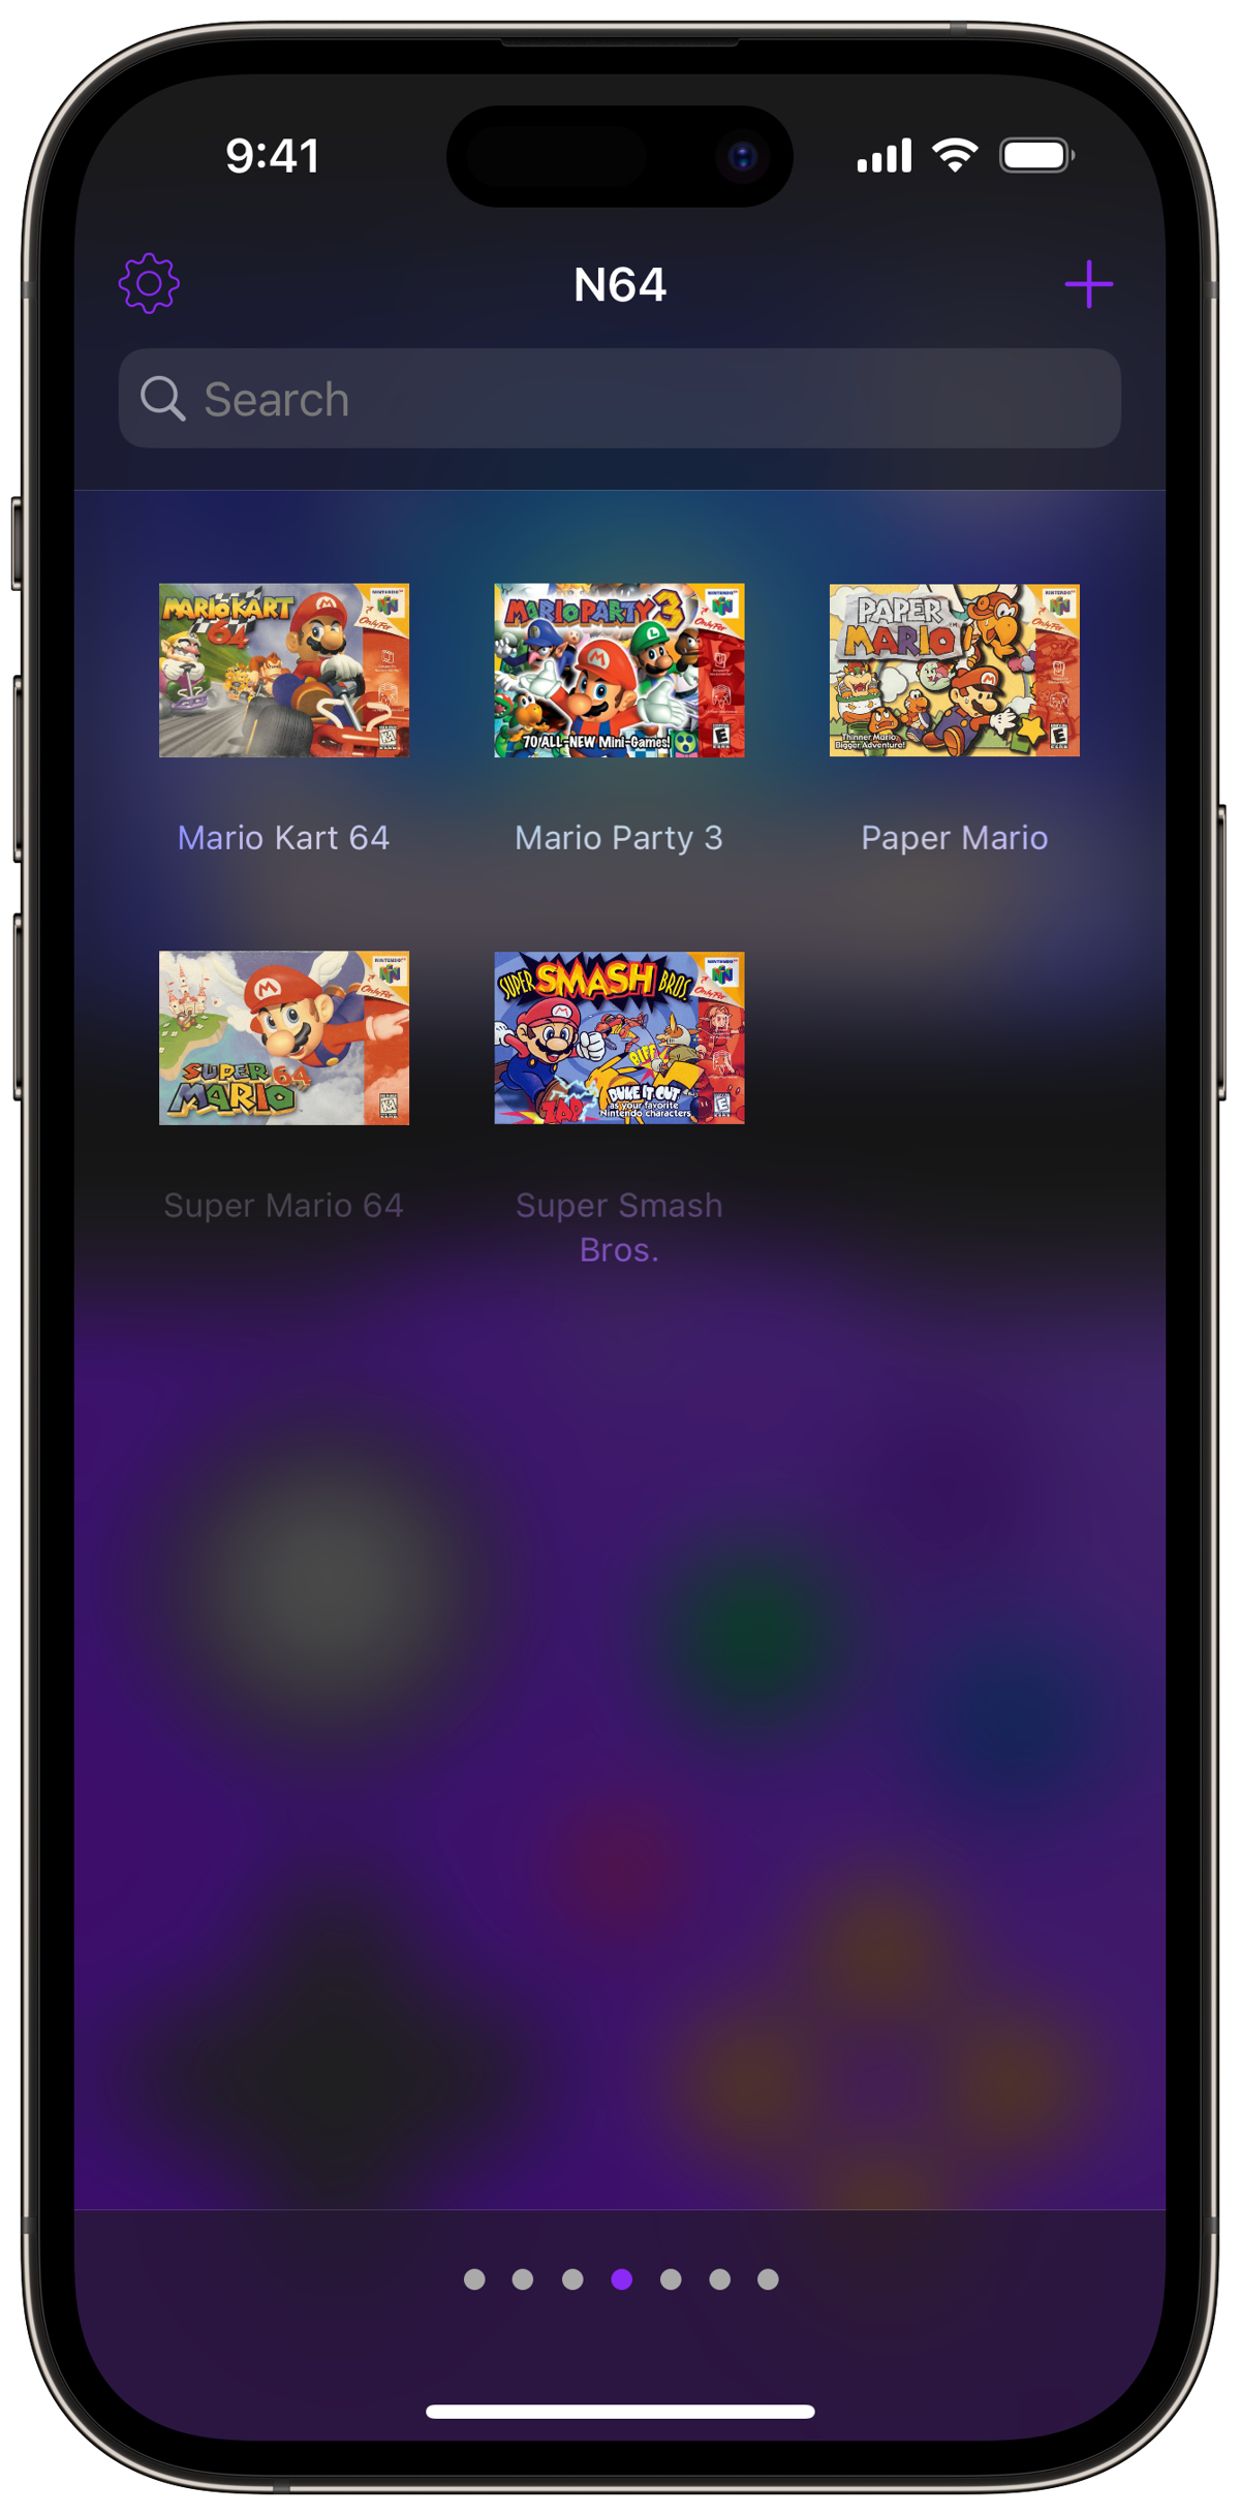 Delta Retro Game Emulator for iOS